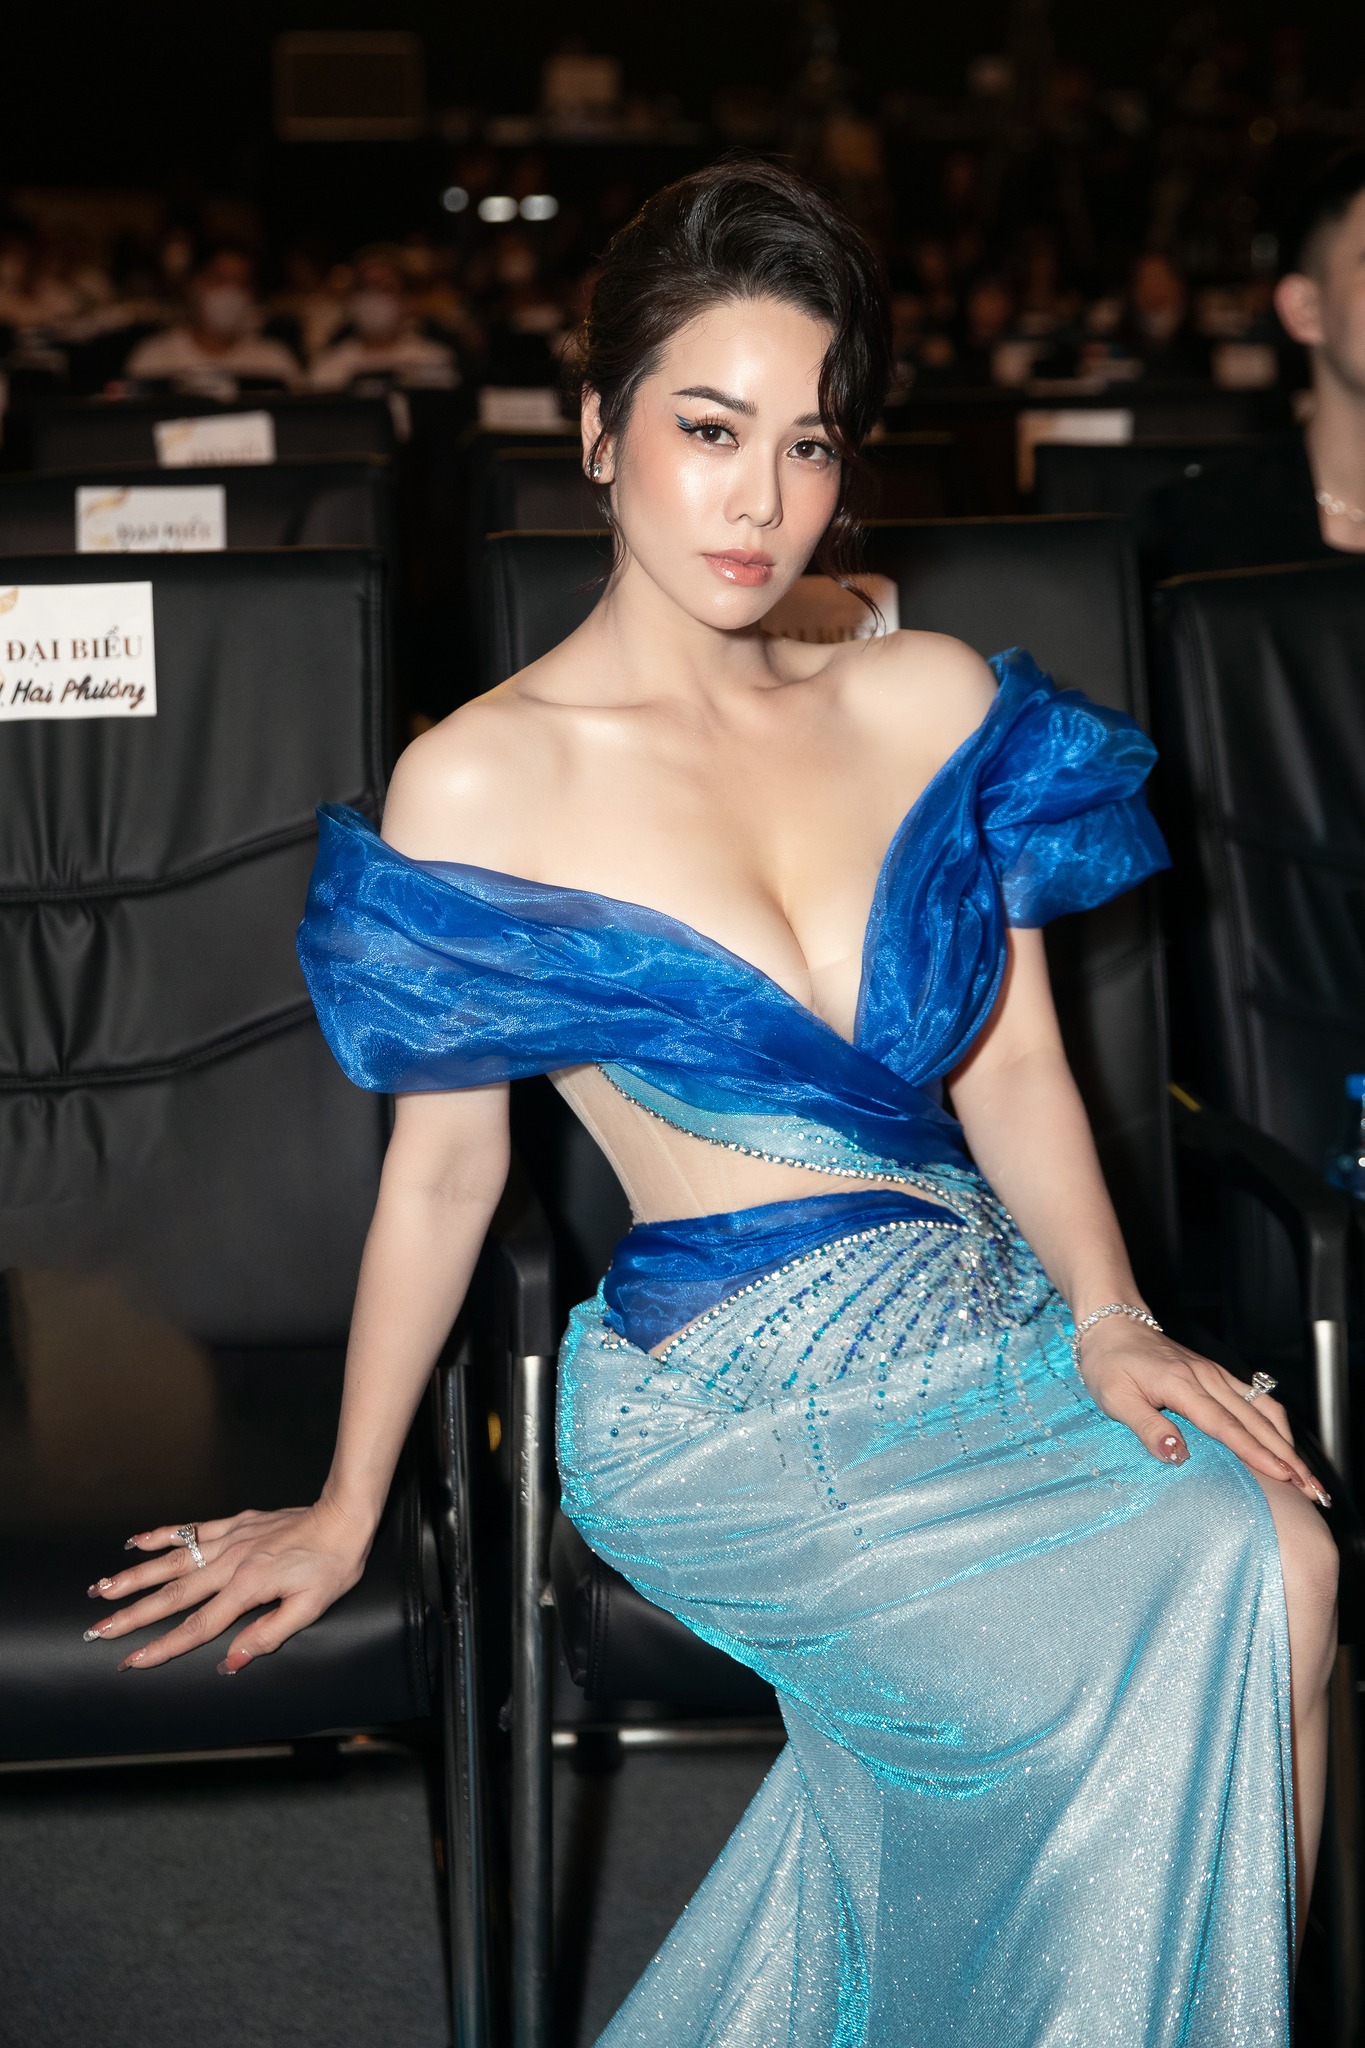 “Cô hầu gái hot nhất phim Việt” dù tăng hay giảm cân, vẫn giữ được vẻ ngoài quyến rũ - 3